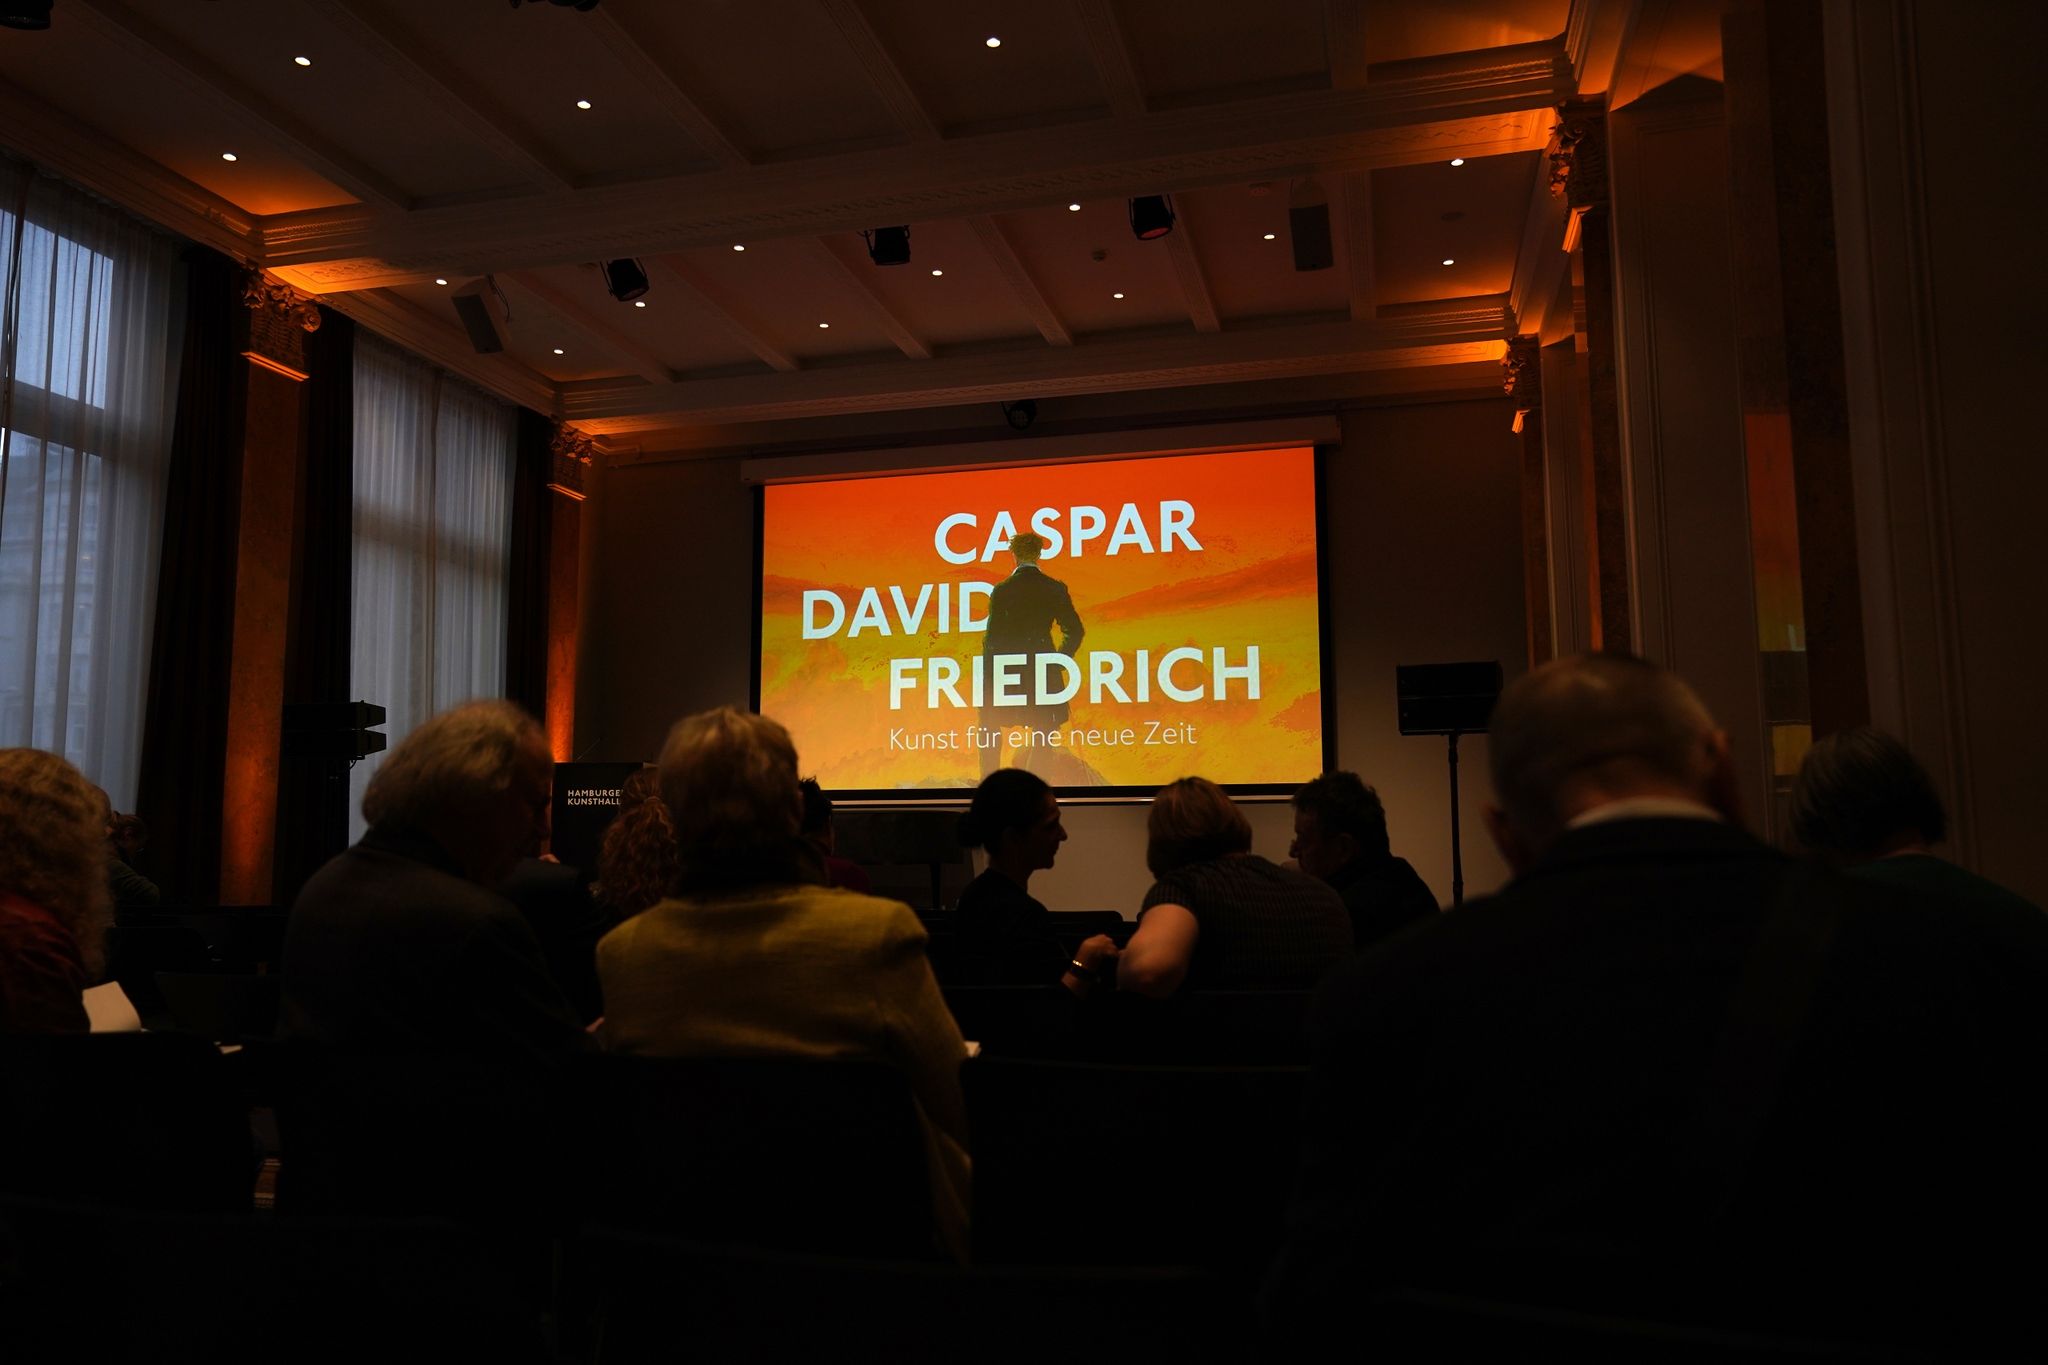 Mit einer großen Retrospektive startet die Hamburger Kunsthalle das Jubiläumsjahr zum 250. Geburtstag von Caspar David Friedrich (1774-1840).